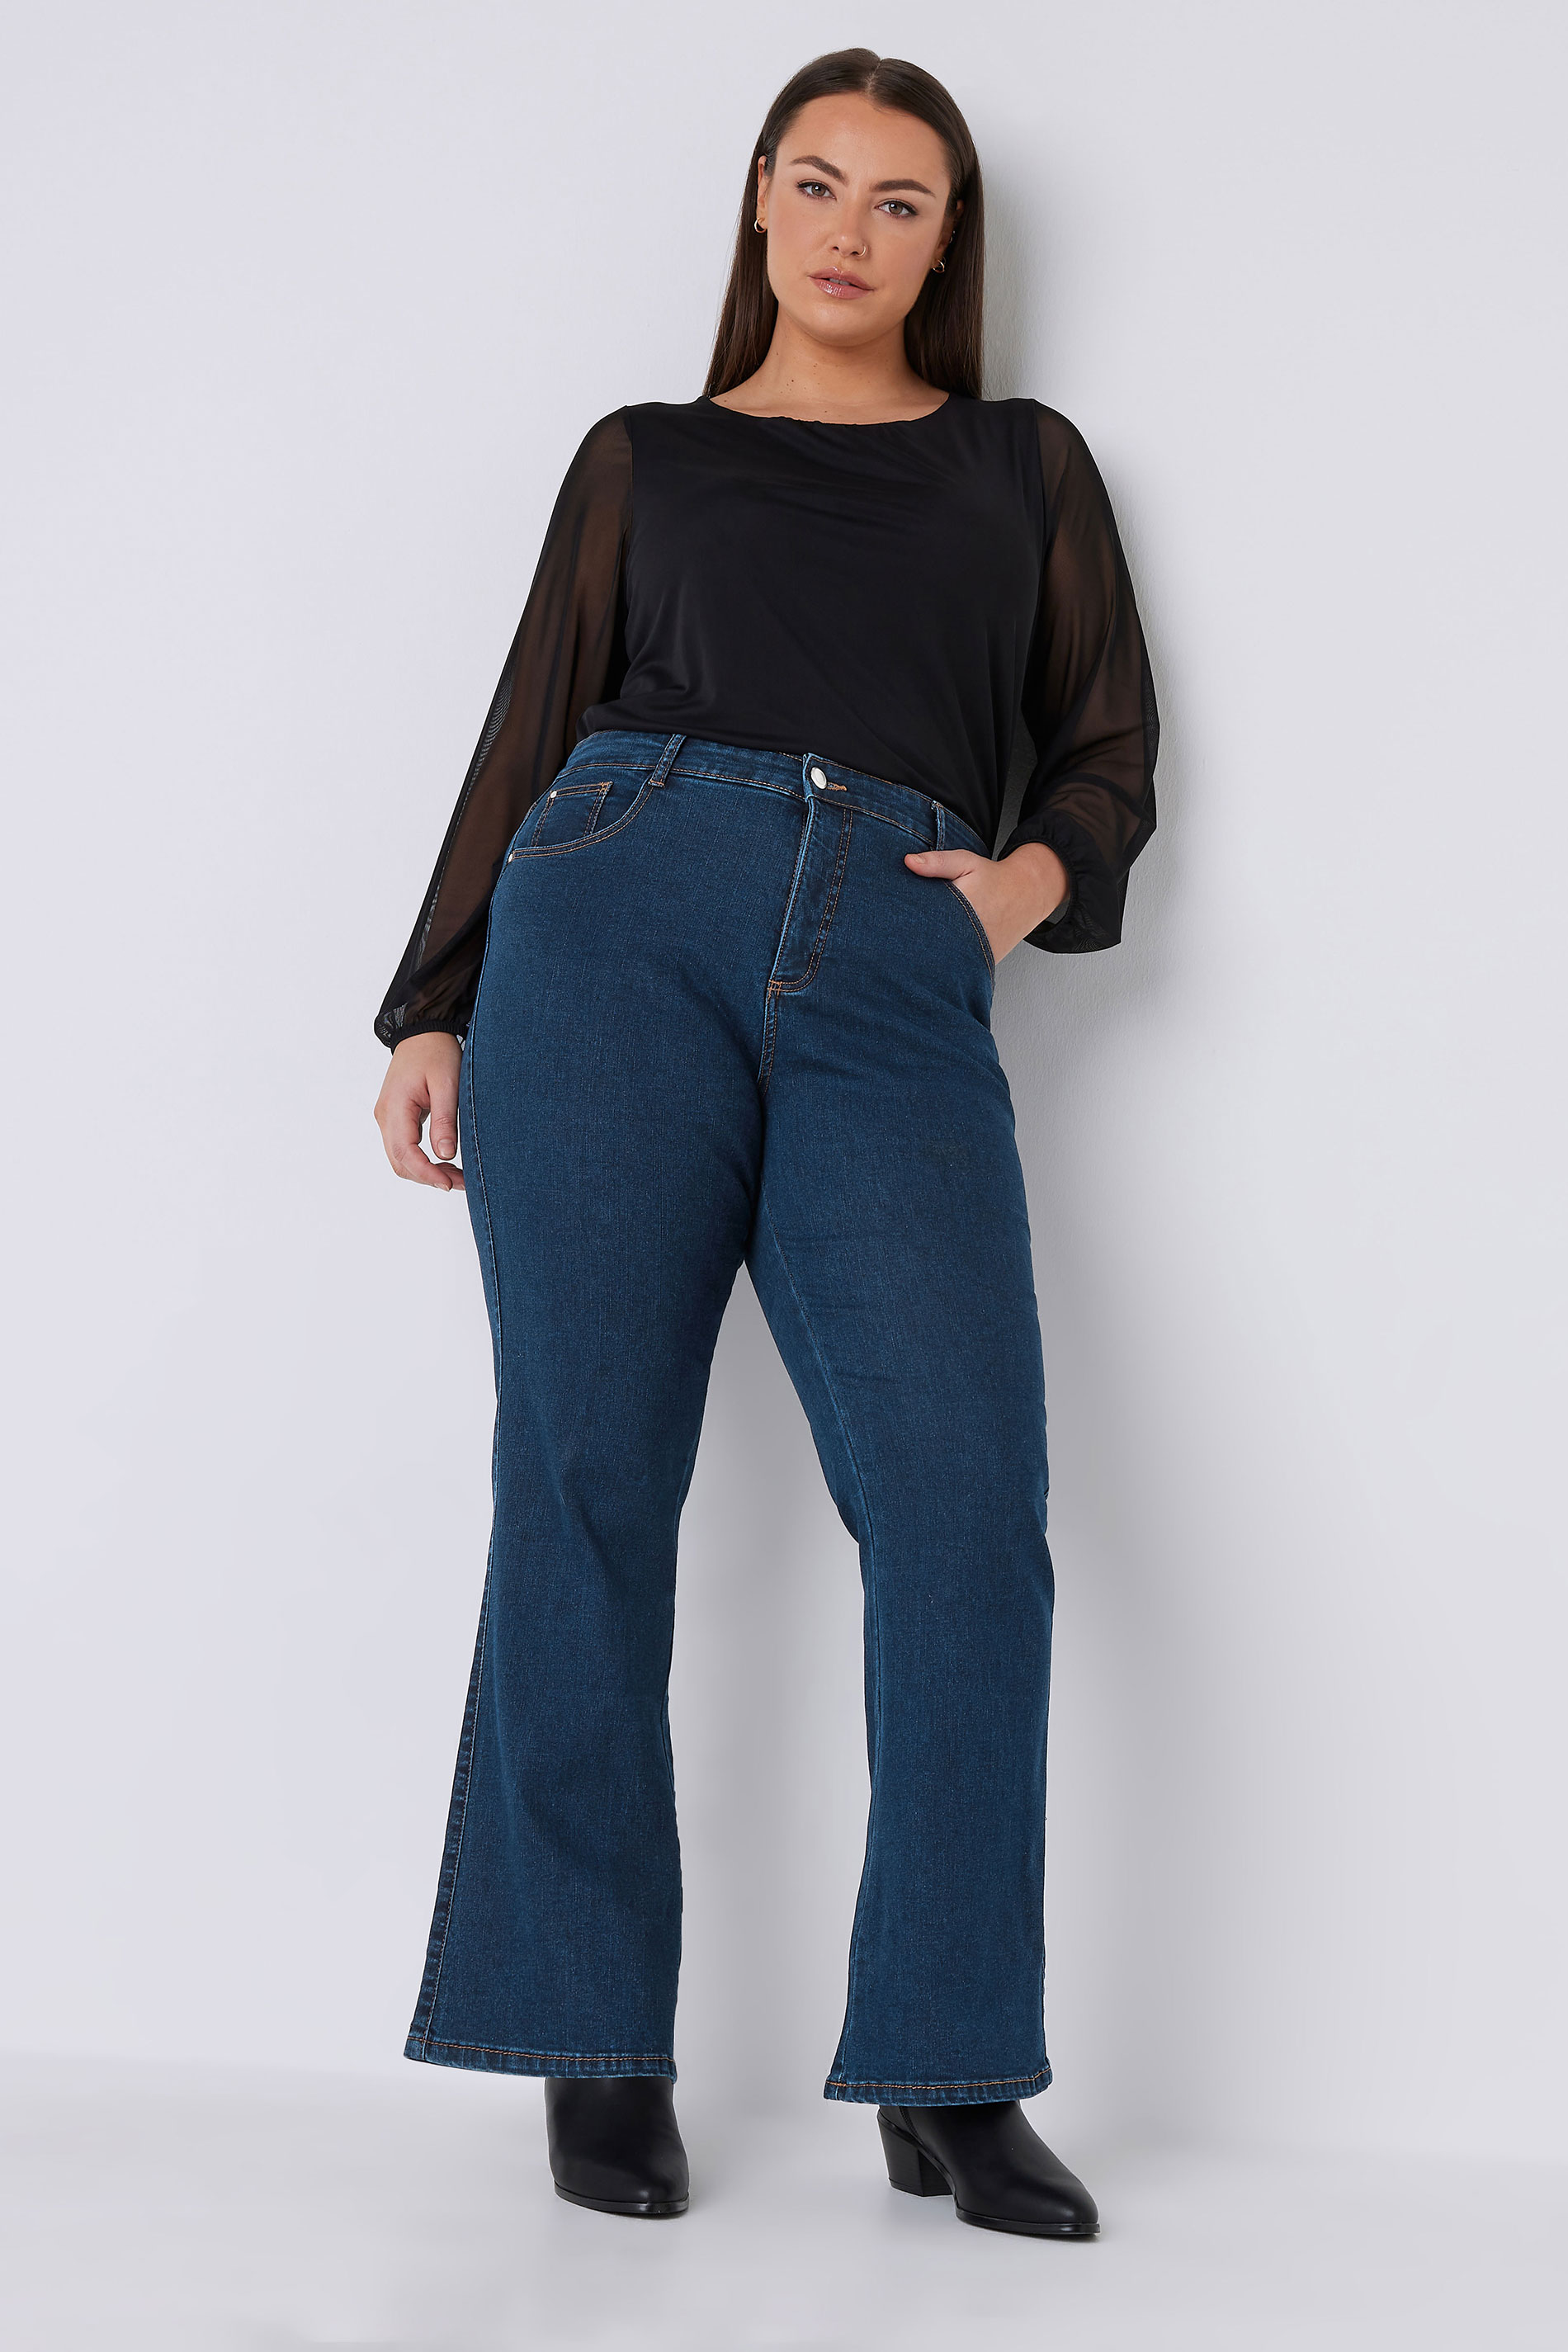 EVANS Plus Size Indigo Blue Bootcut Jeans | Evans 2